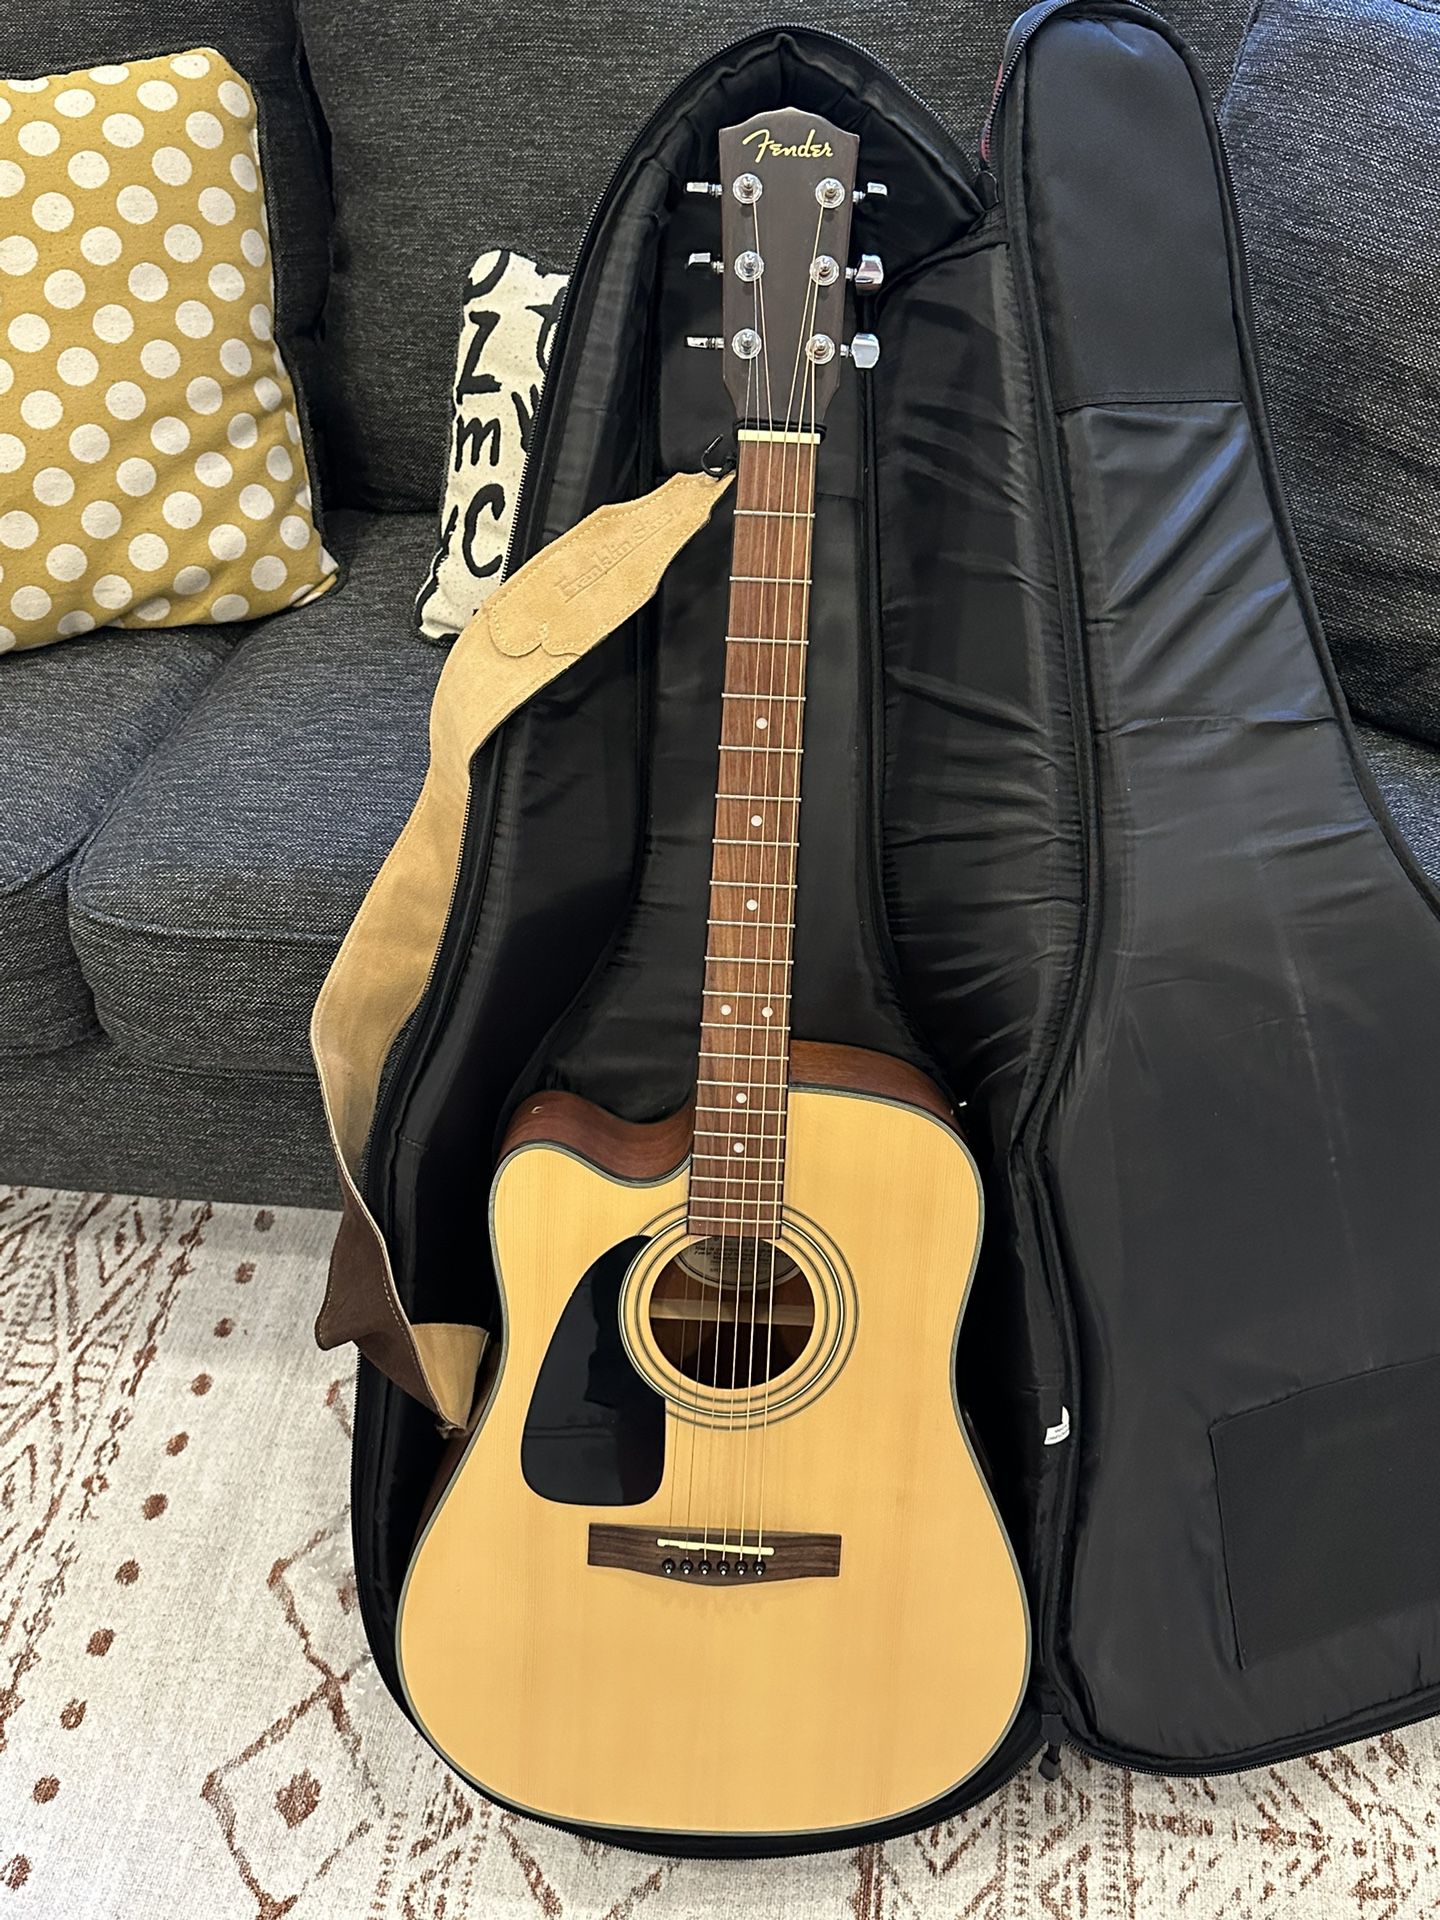 Fender Left-handed Acoustic Electric Guitar